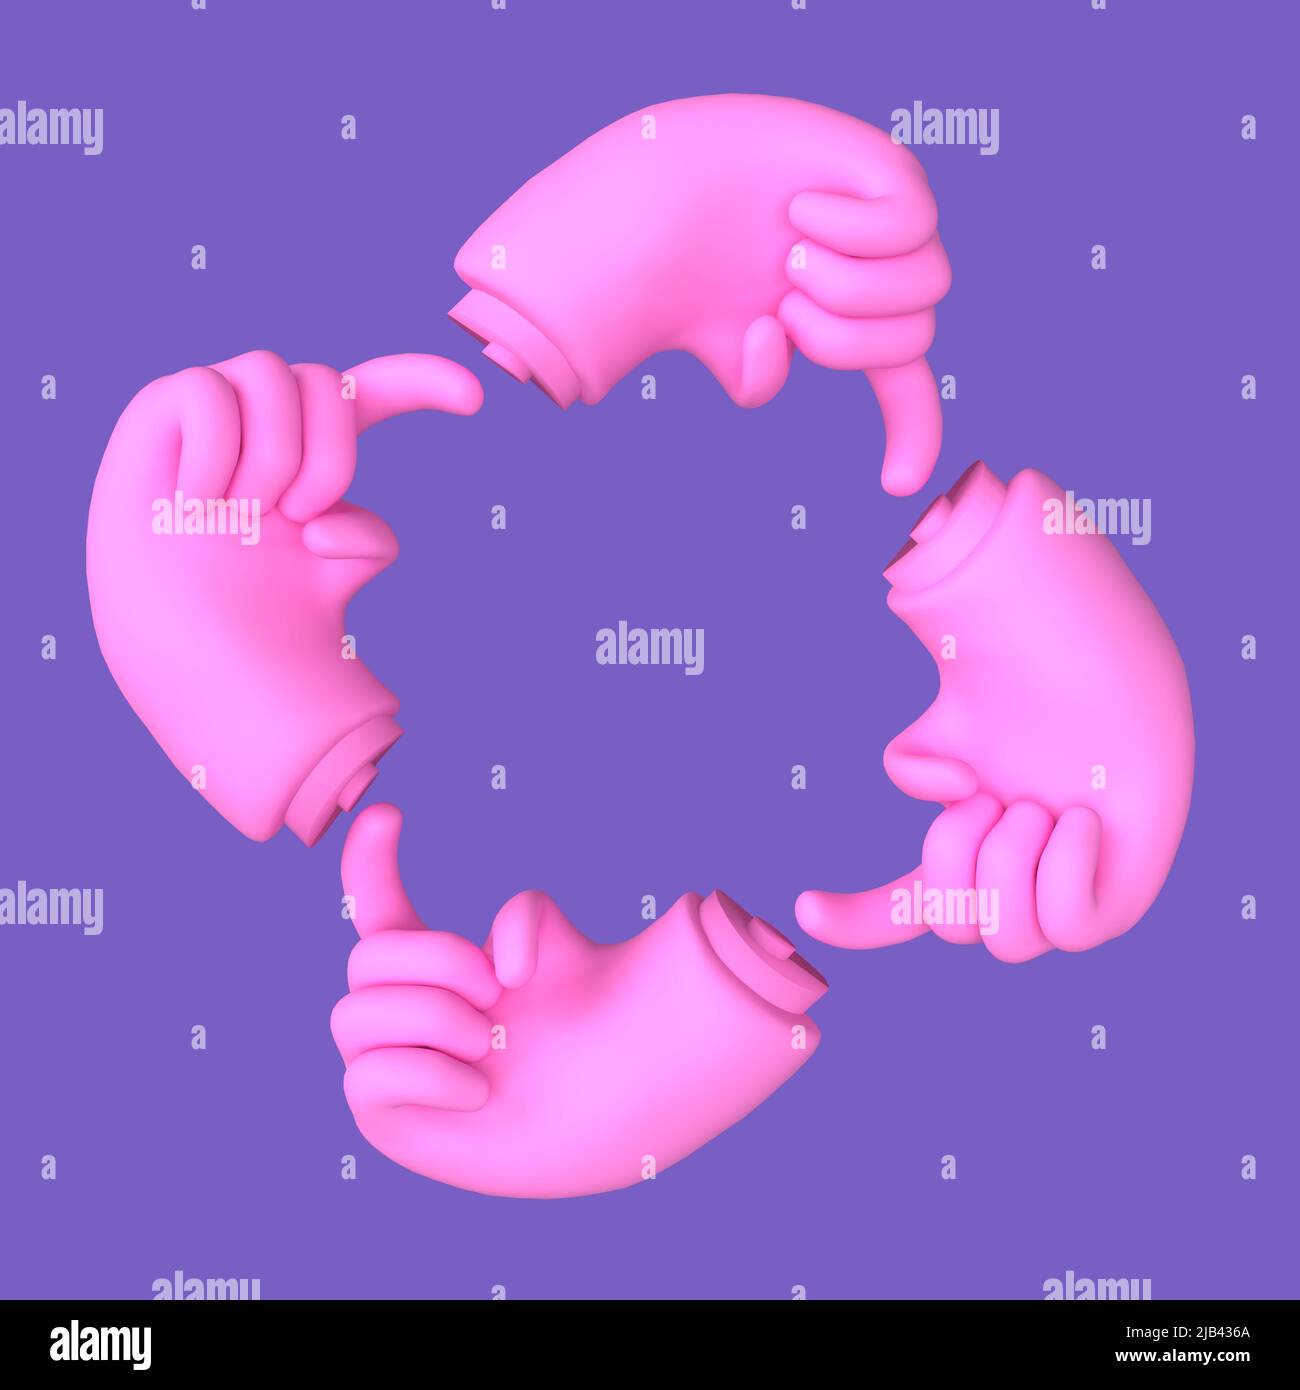 pression du doigt sur la touche sensitive dans un cycle sans fin , illustration 3d Banque D'Images